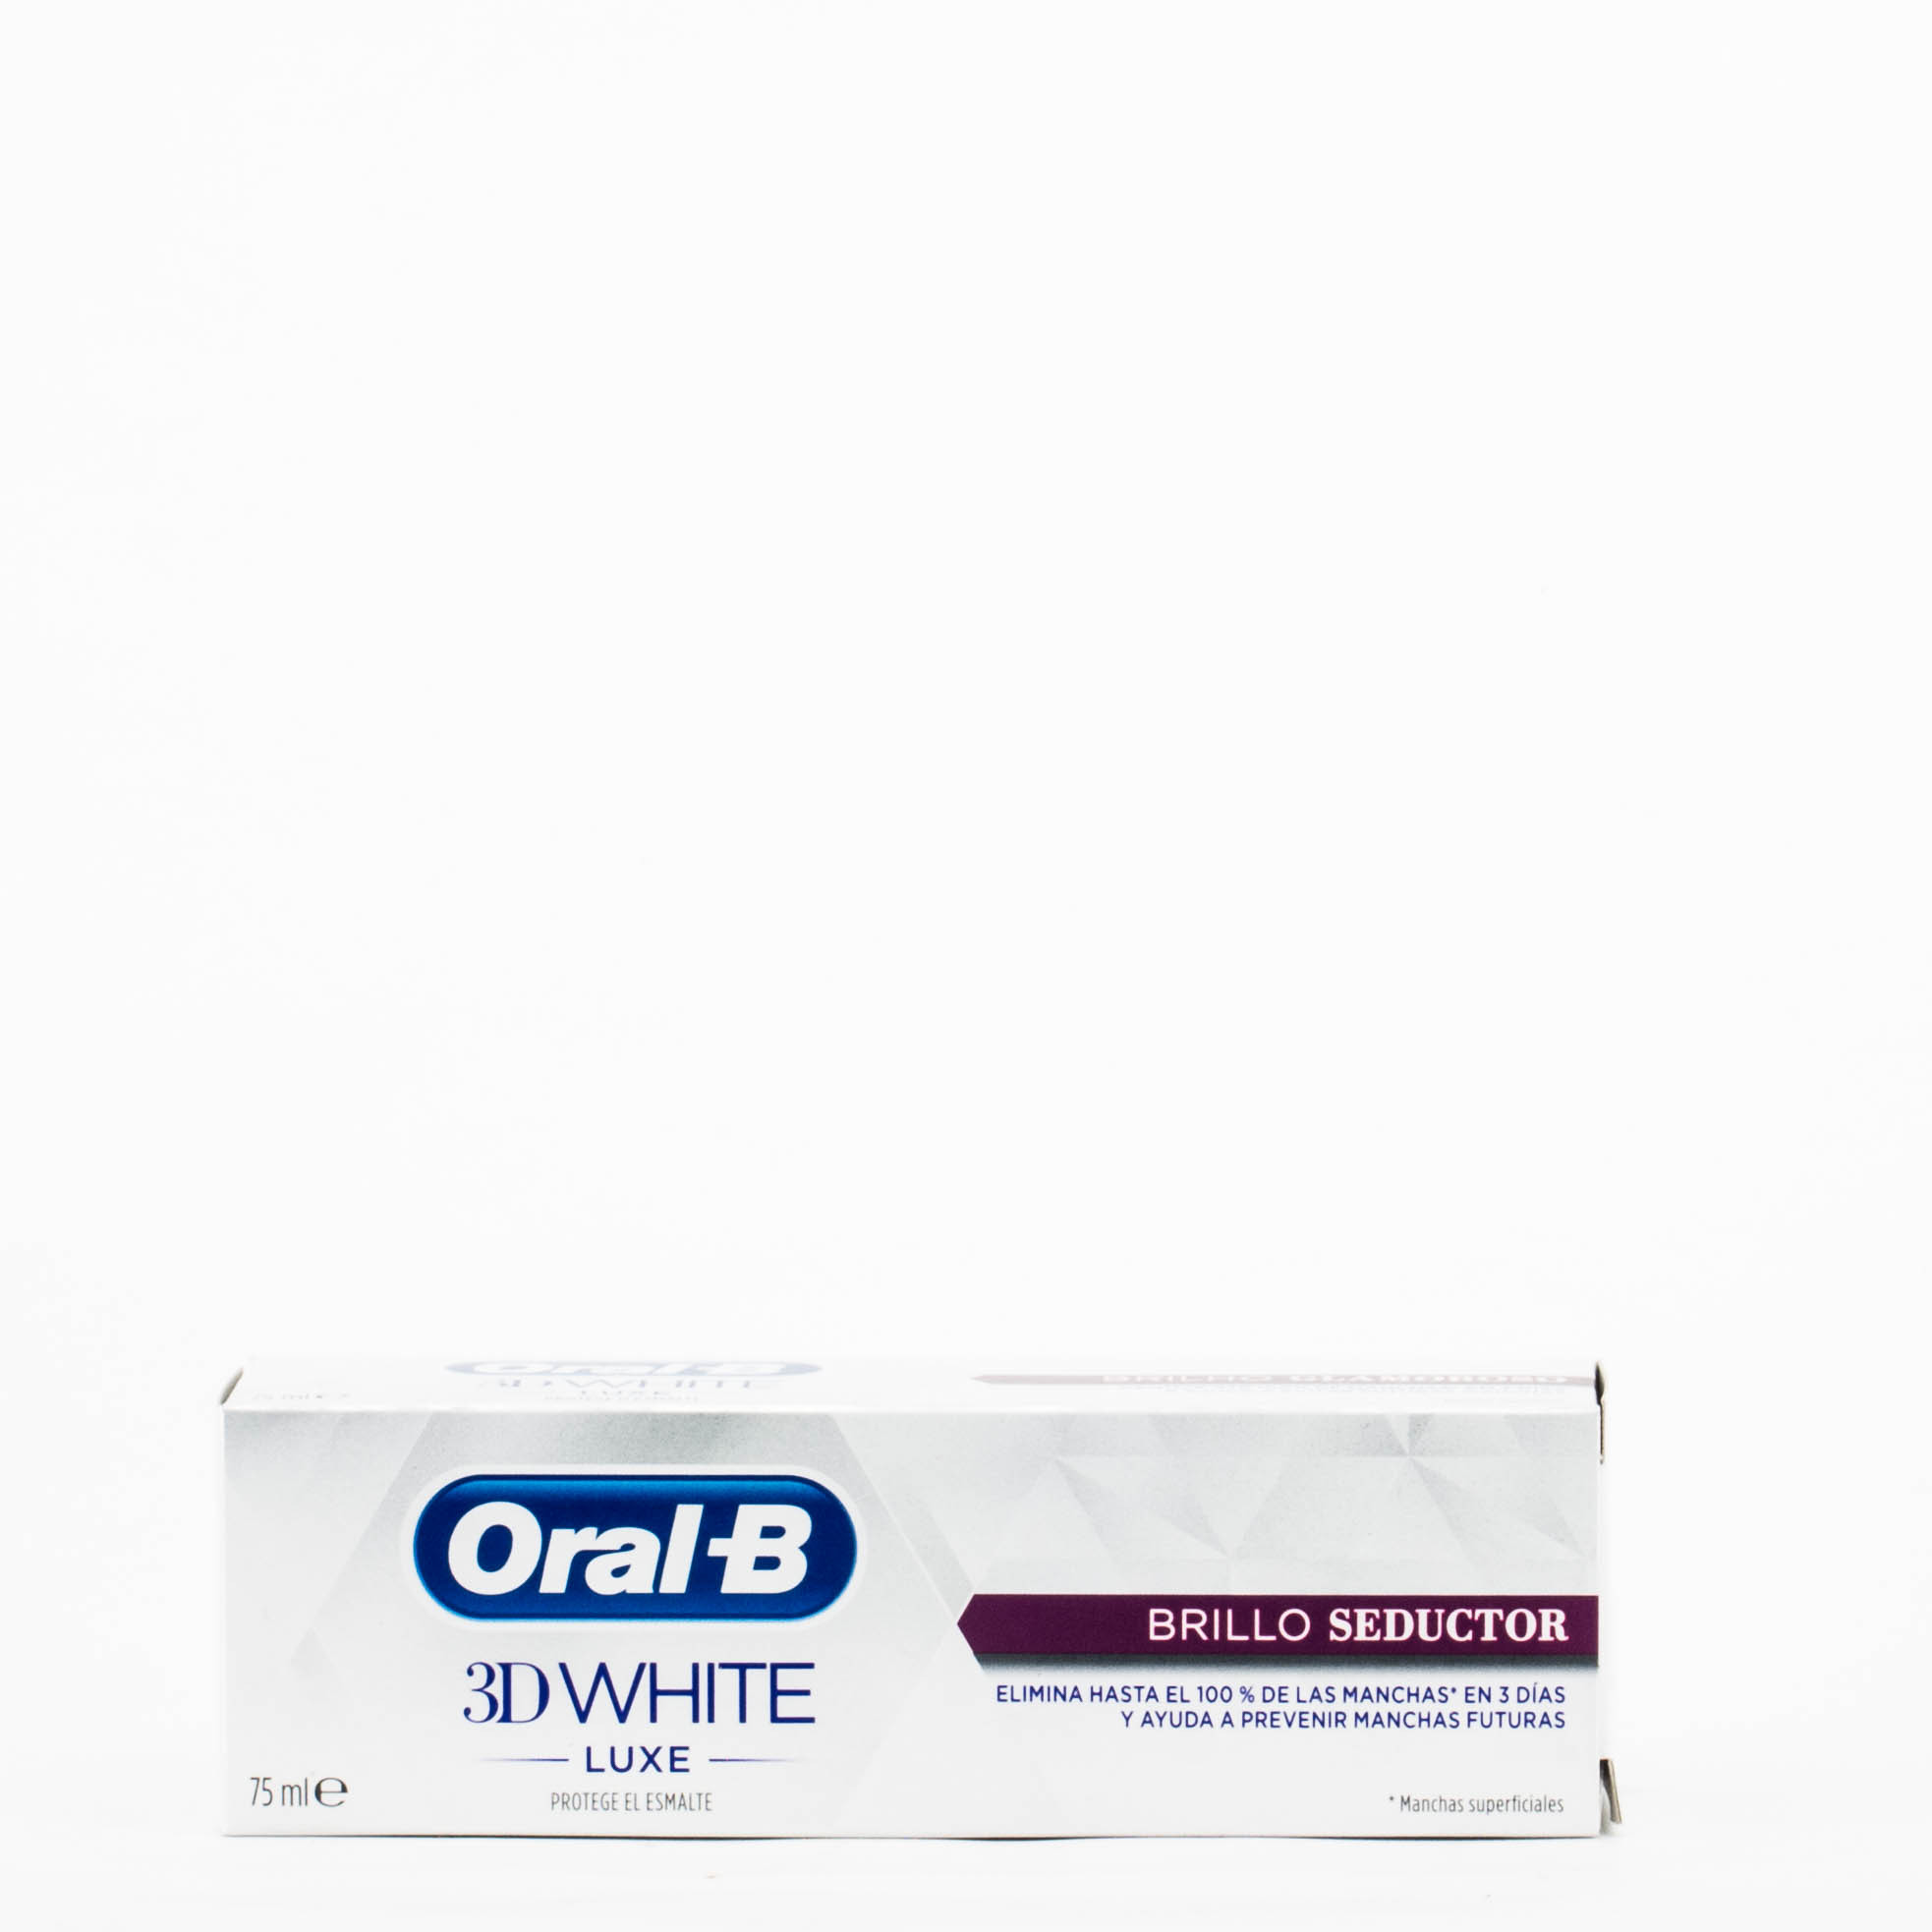 Oral B 3D White Luxe Brillo seductor, 75ml